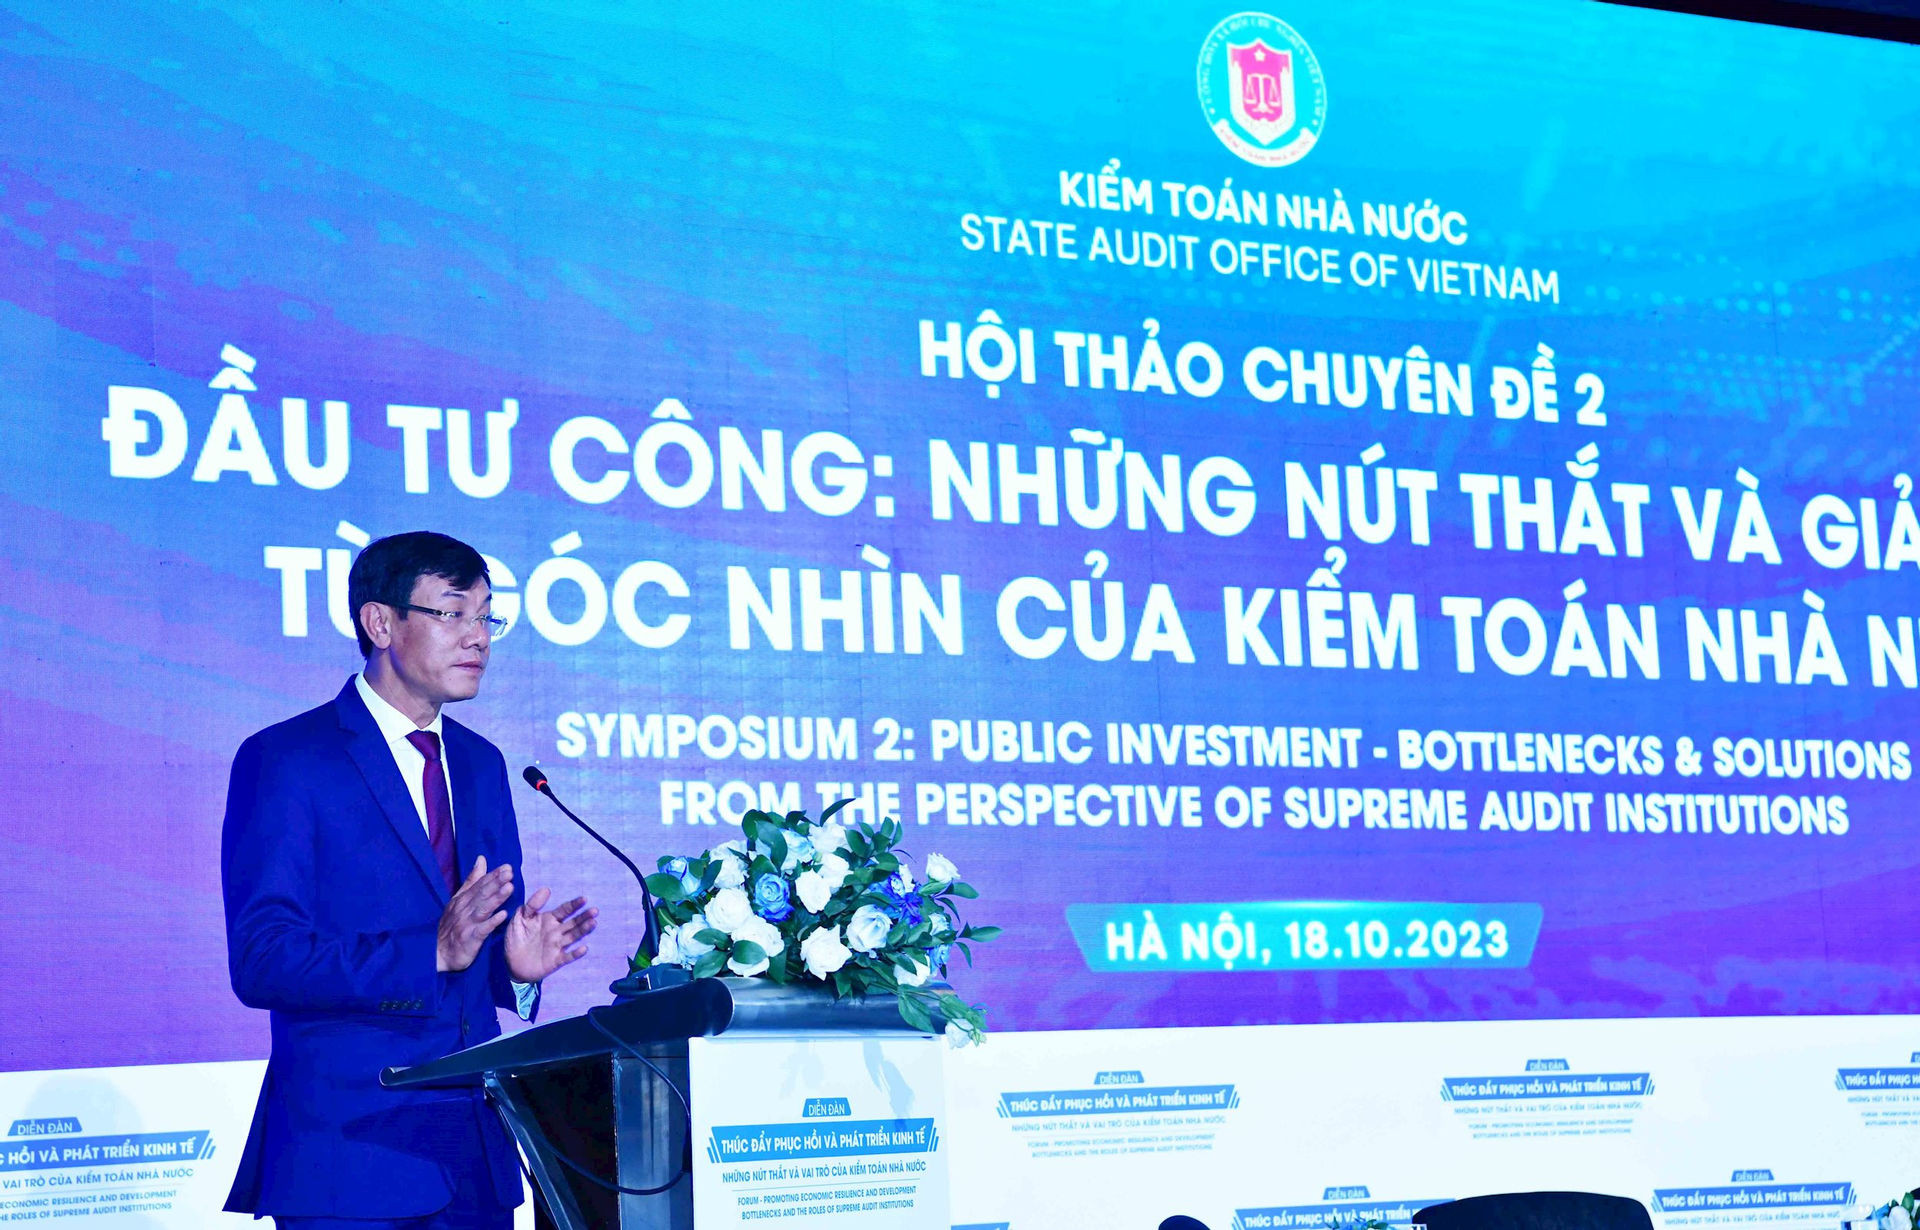 Phó Tổng Kiểm toán nhà nước Doãn Anh Thơ tổng kết Hội thảo. Ảnh: Nguyễn Lộc